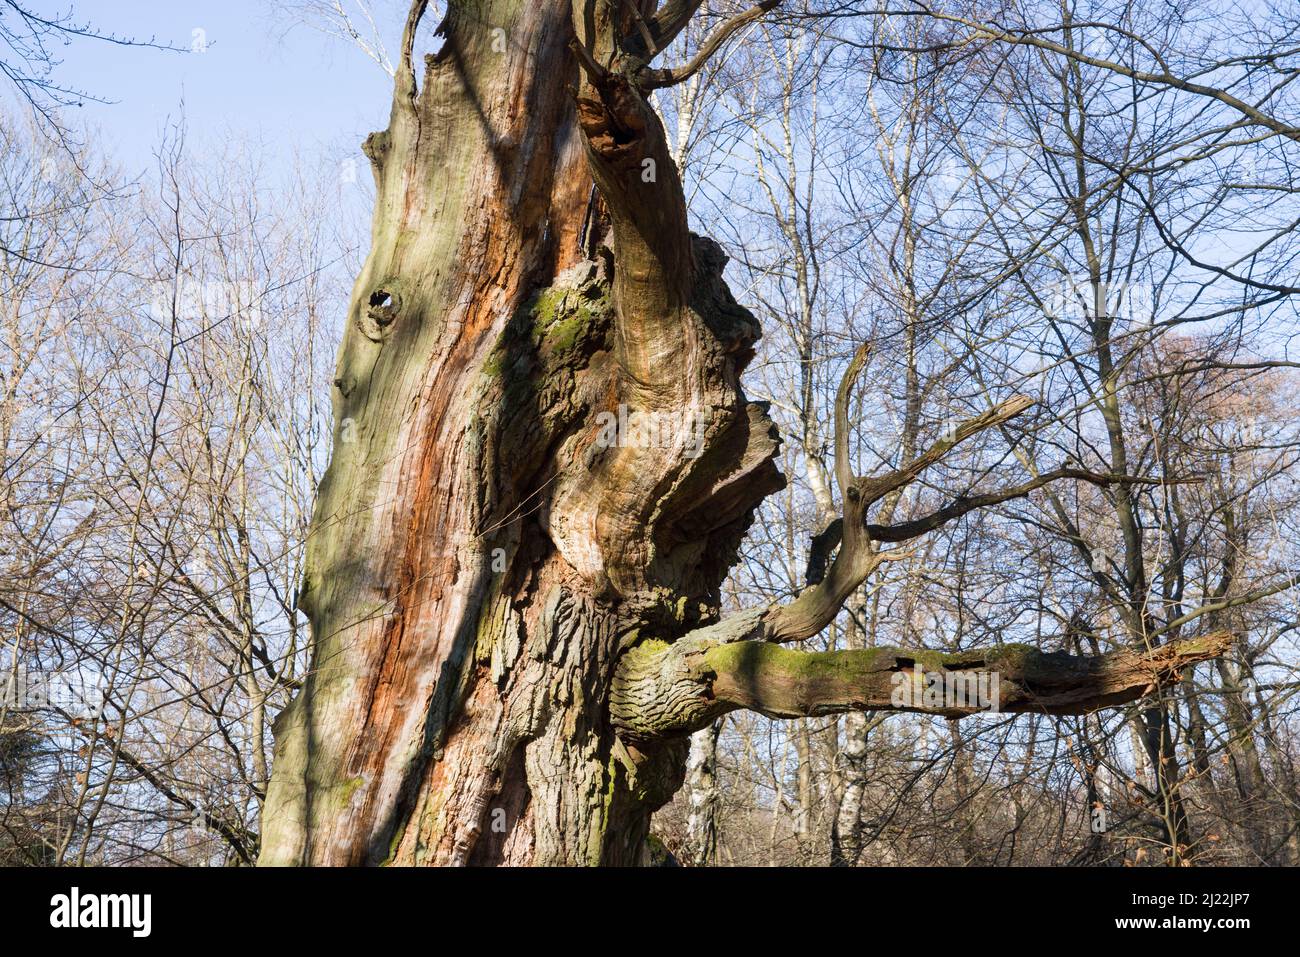 Vieux chêne, ressemble à un animal, forêt primitive Urwald Sababurg, Hofgeismar, Weser Uplands, Weserbergland, Hesse, Allemagne Banque D'Images